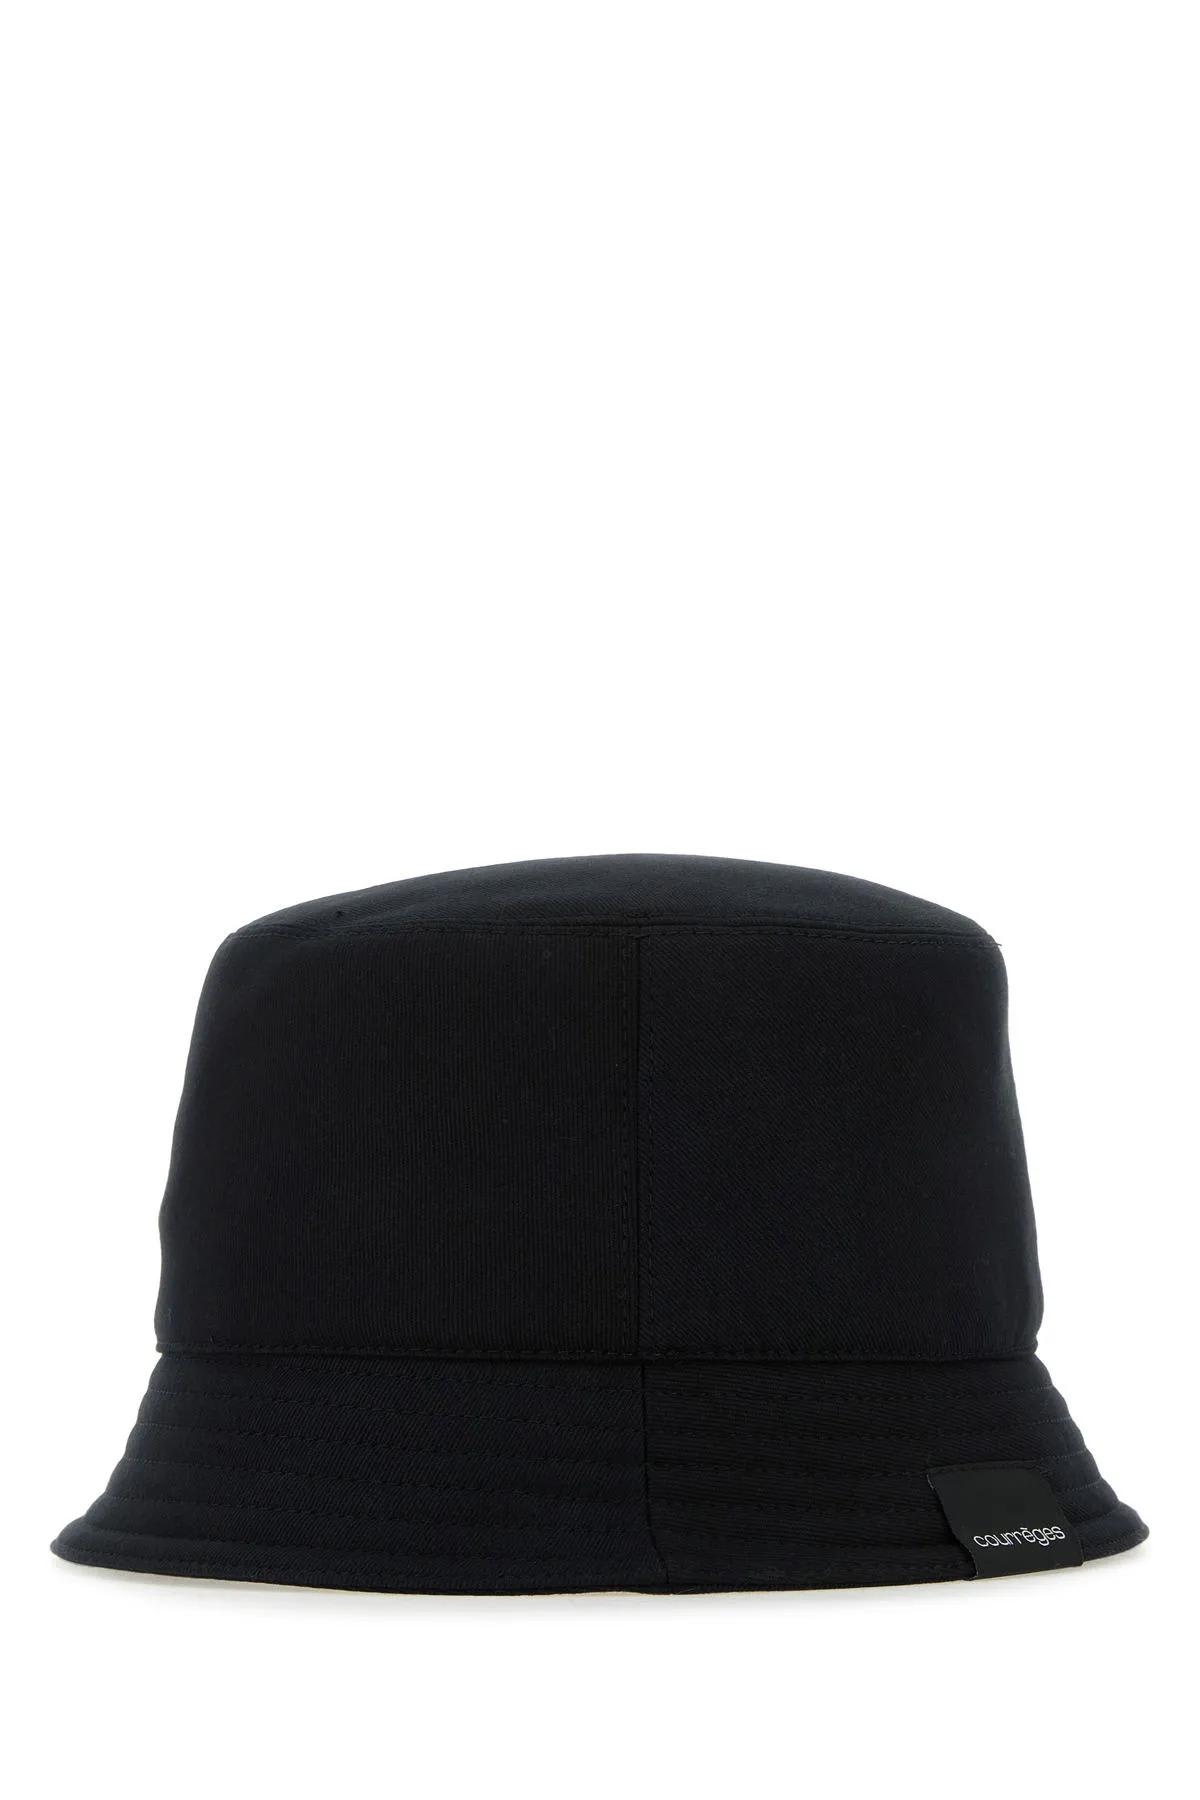 Shop Courrèges Black Cotton Bucket Hat